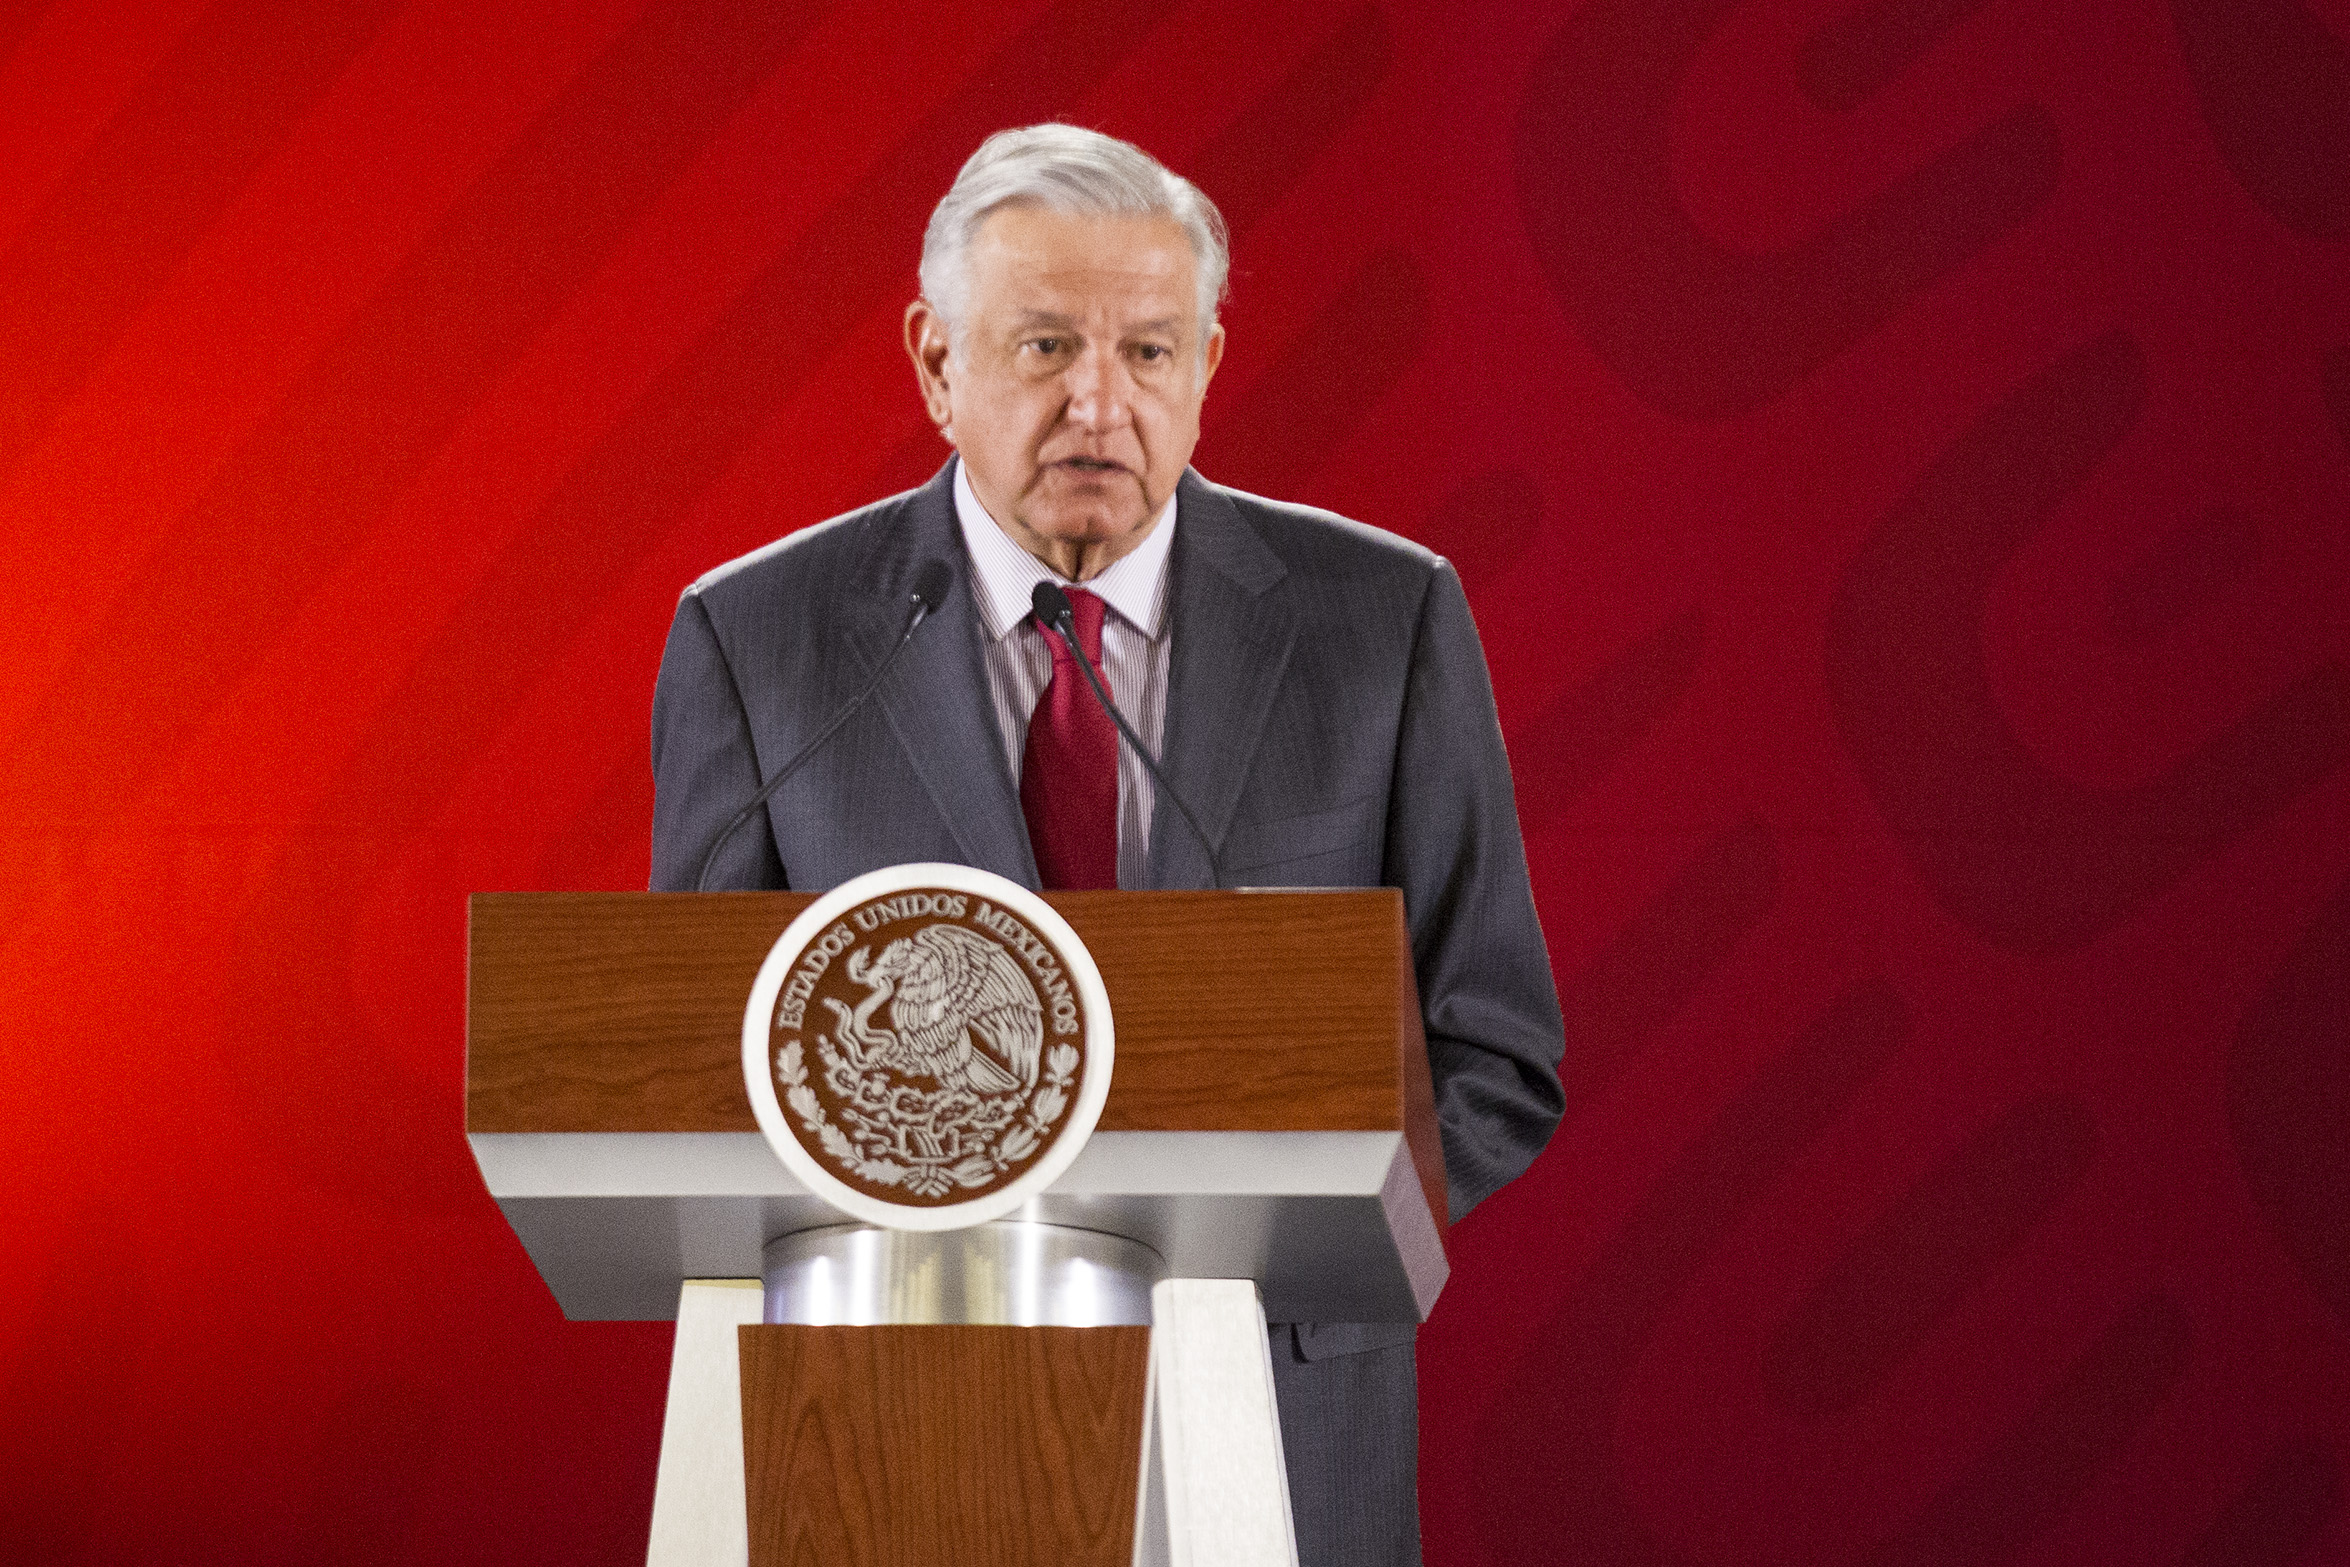 Periodo neoliberal, el de mayor desigualdad y corrupción: López Obrador